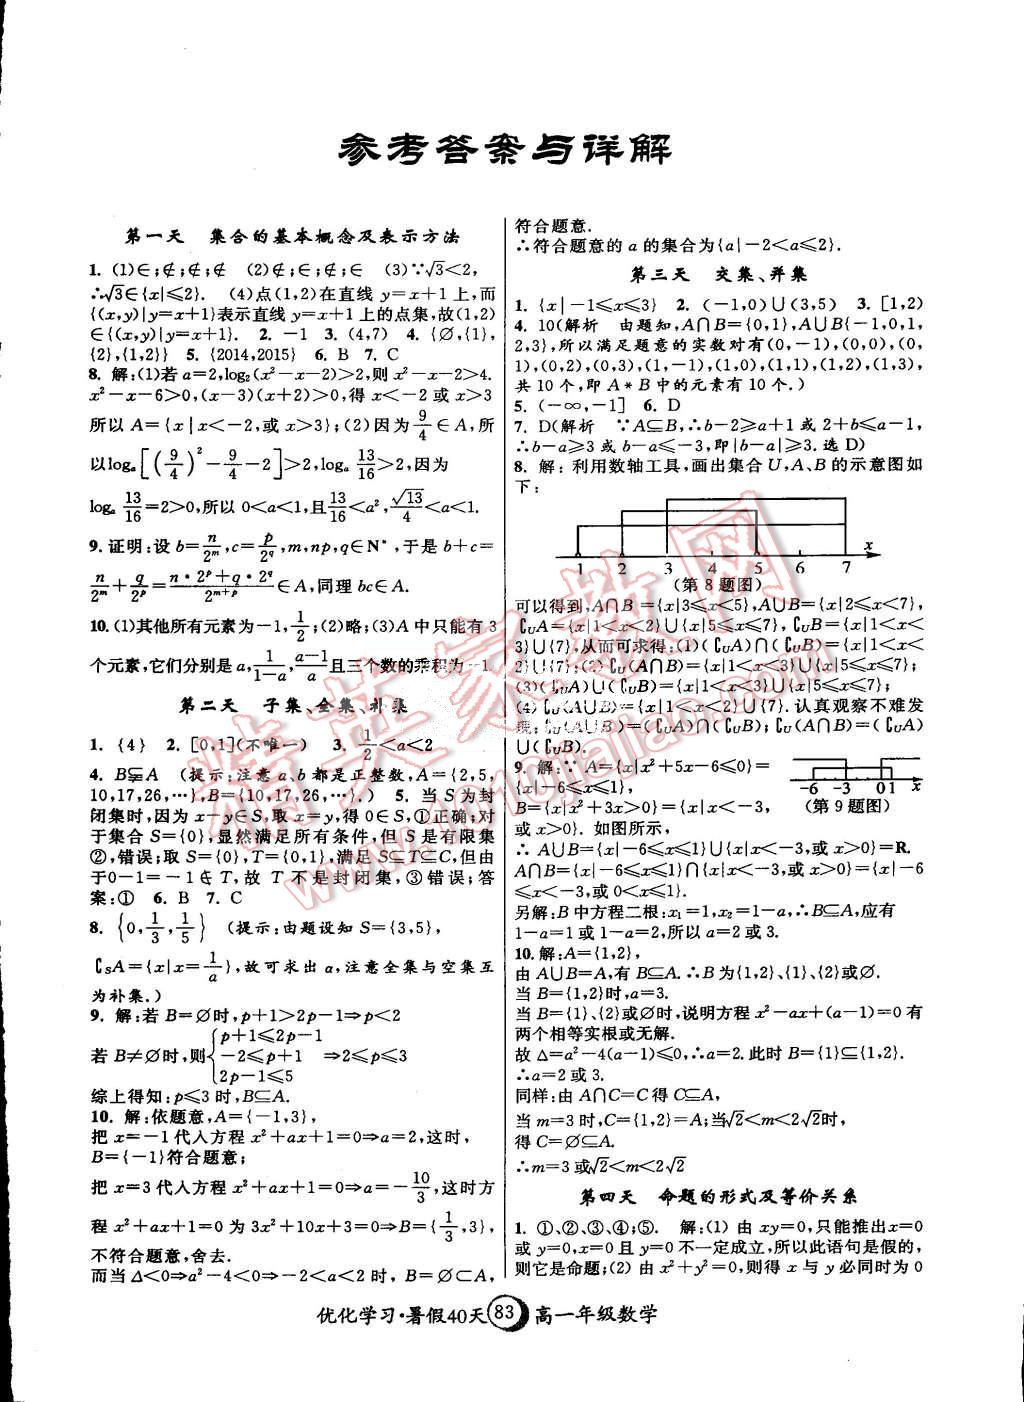 学习暑假40天暑假作业高一年级数学上海地区专用 > 第1页 参考答案